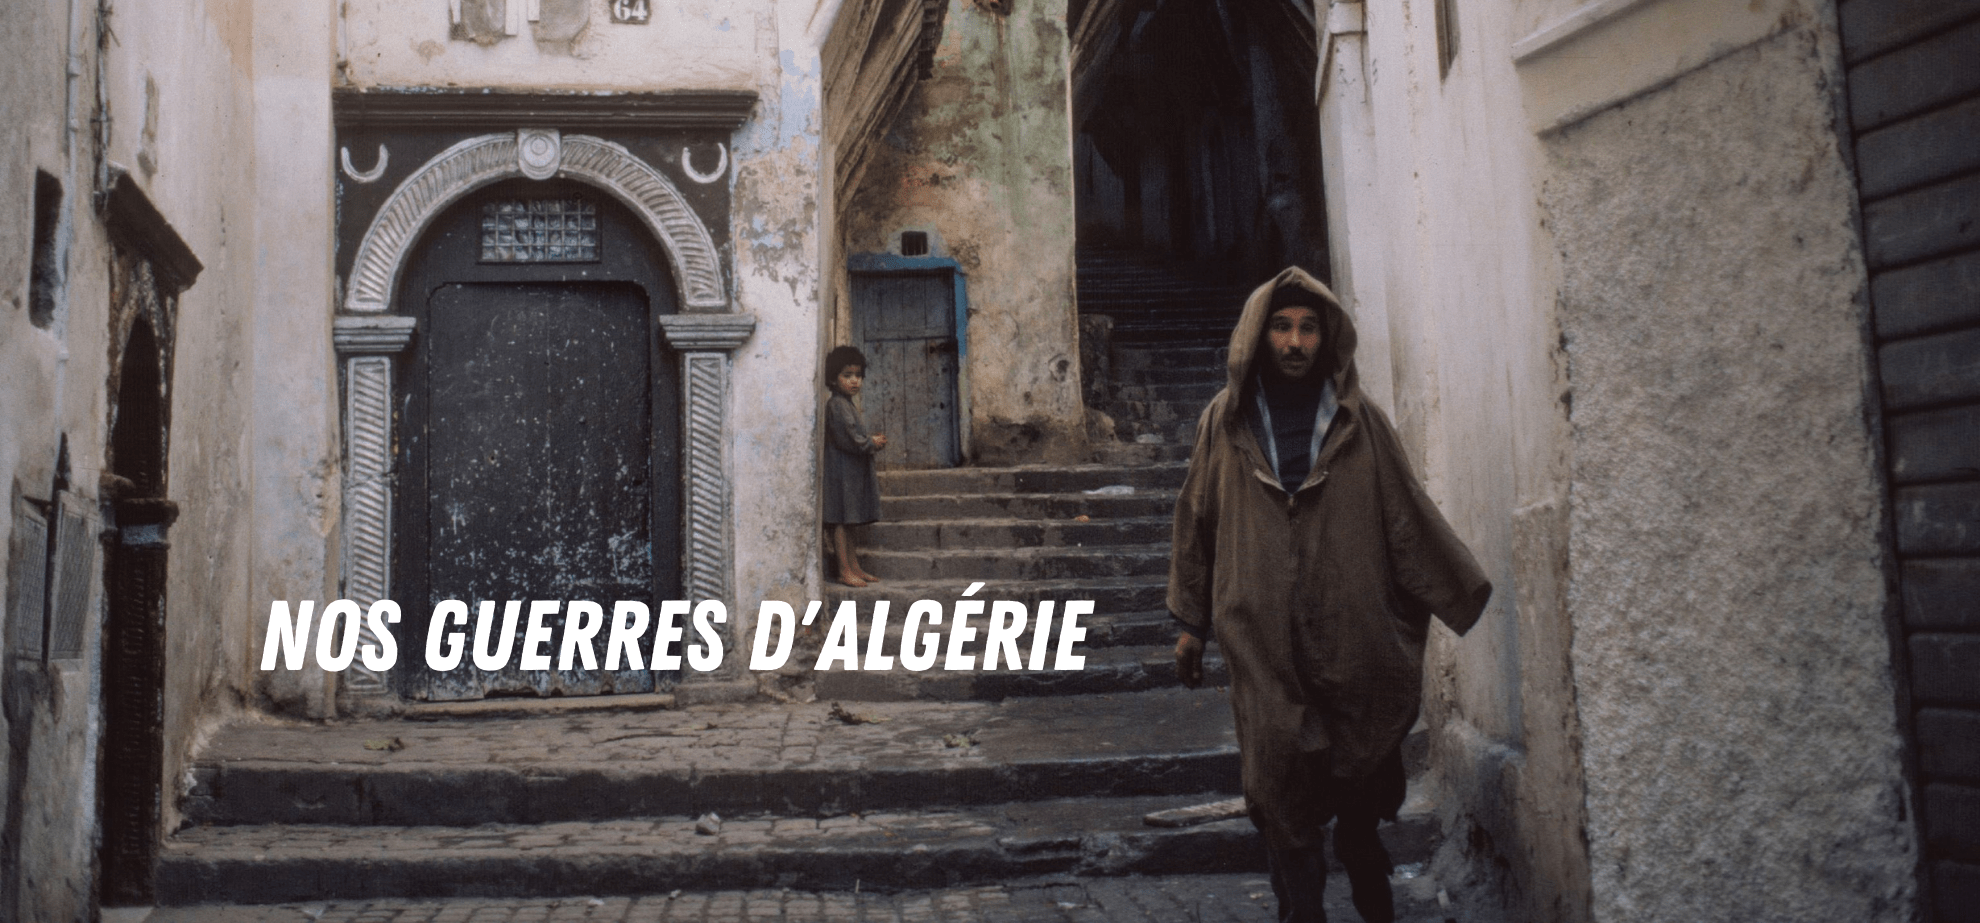 Des habitants dans la casbah d'Alger au milieu des années 1980. Photographie : Heinz Baumann sous licence créative commons